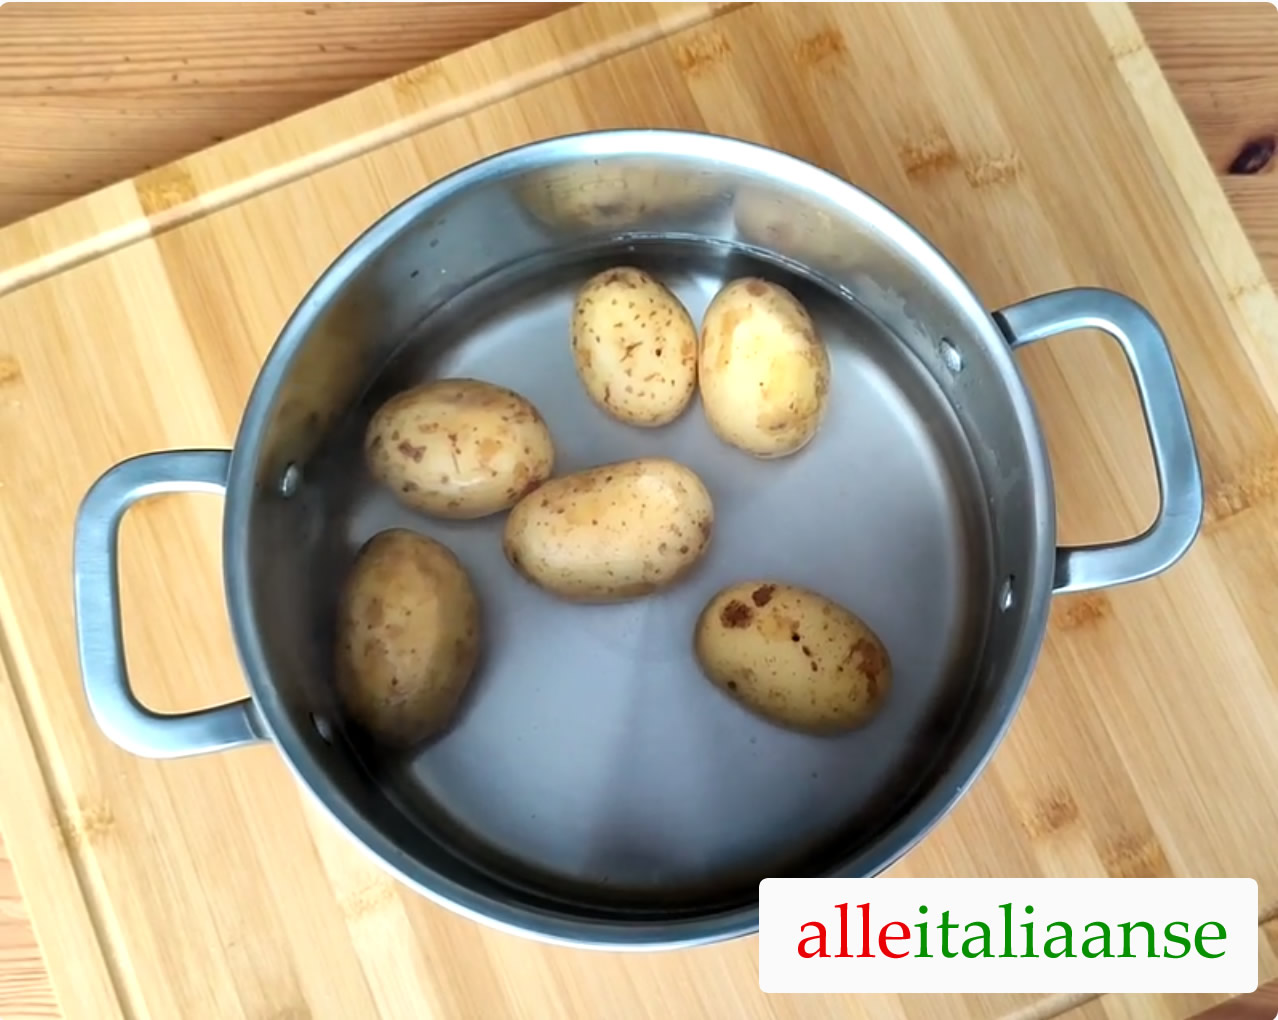 Maak de aardappelen zacht